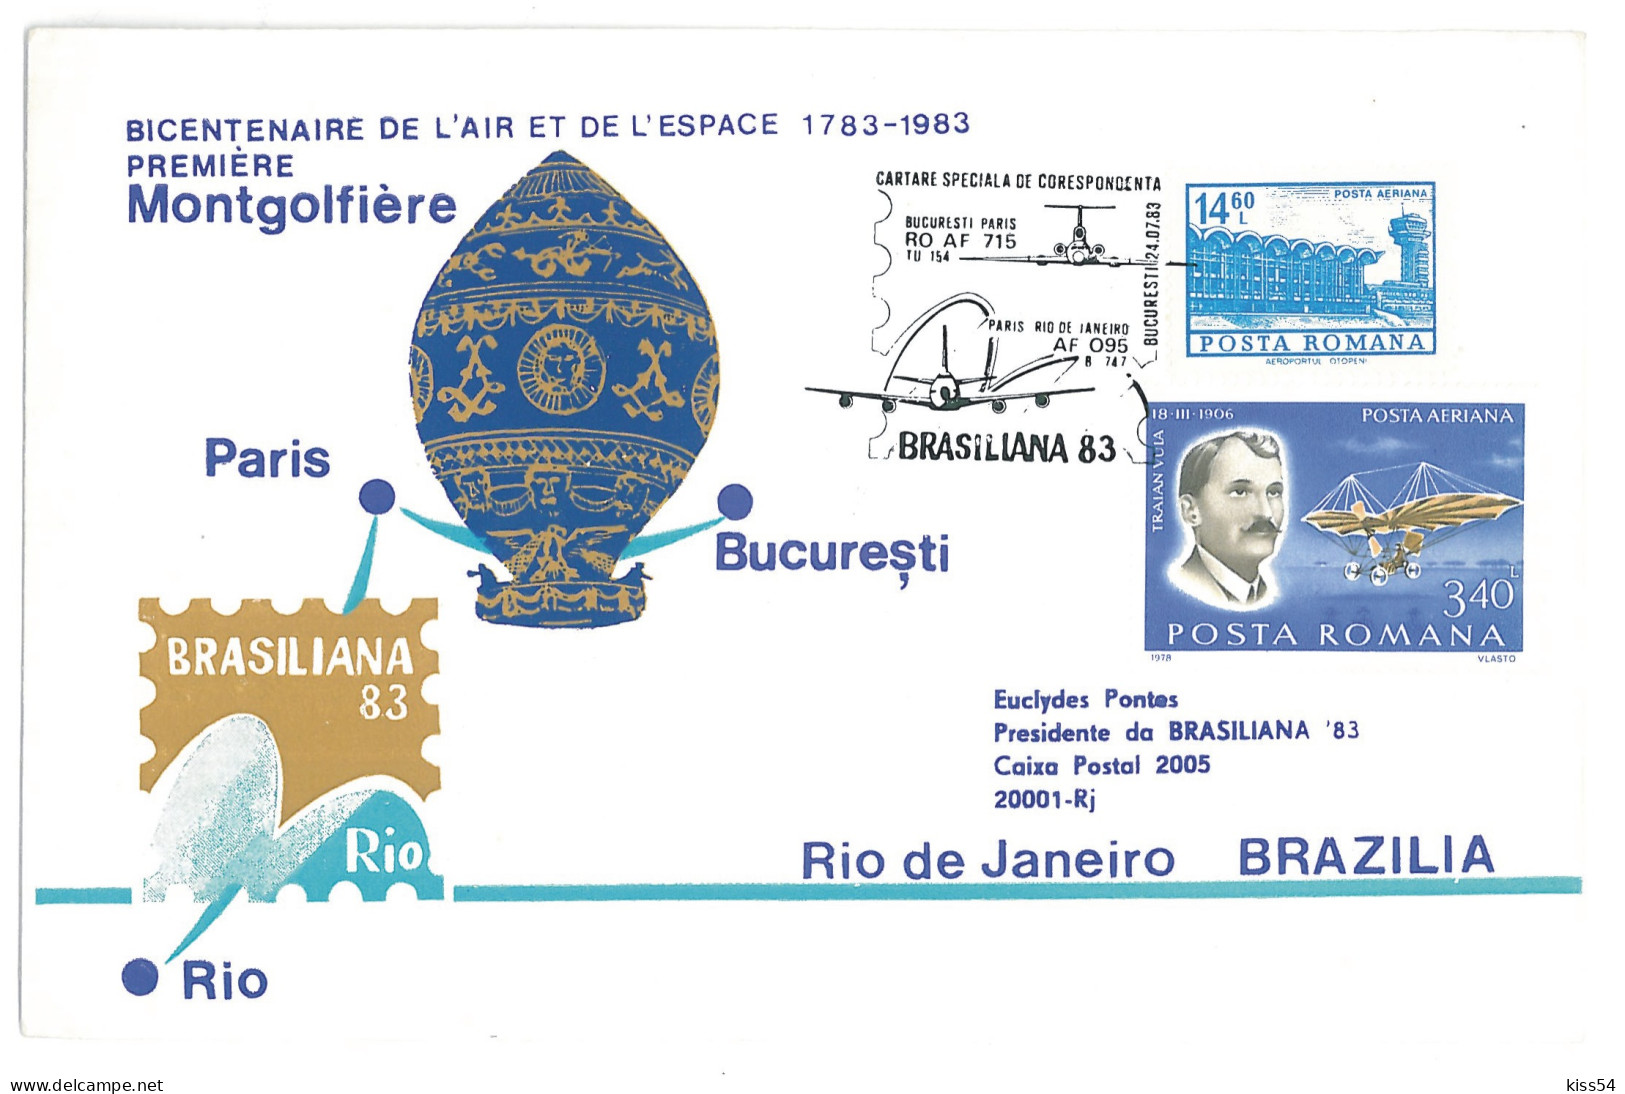 COV 24 - 266-a AIRPLANE, Flight BUCURESTI, PARIS, RIO De JANEIRO - Cover - Used - 1983 - Covers & Documents